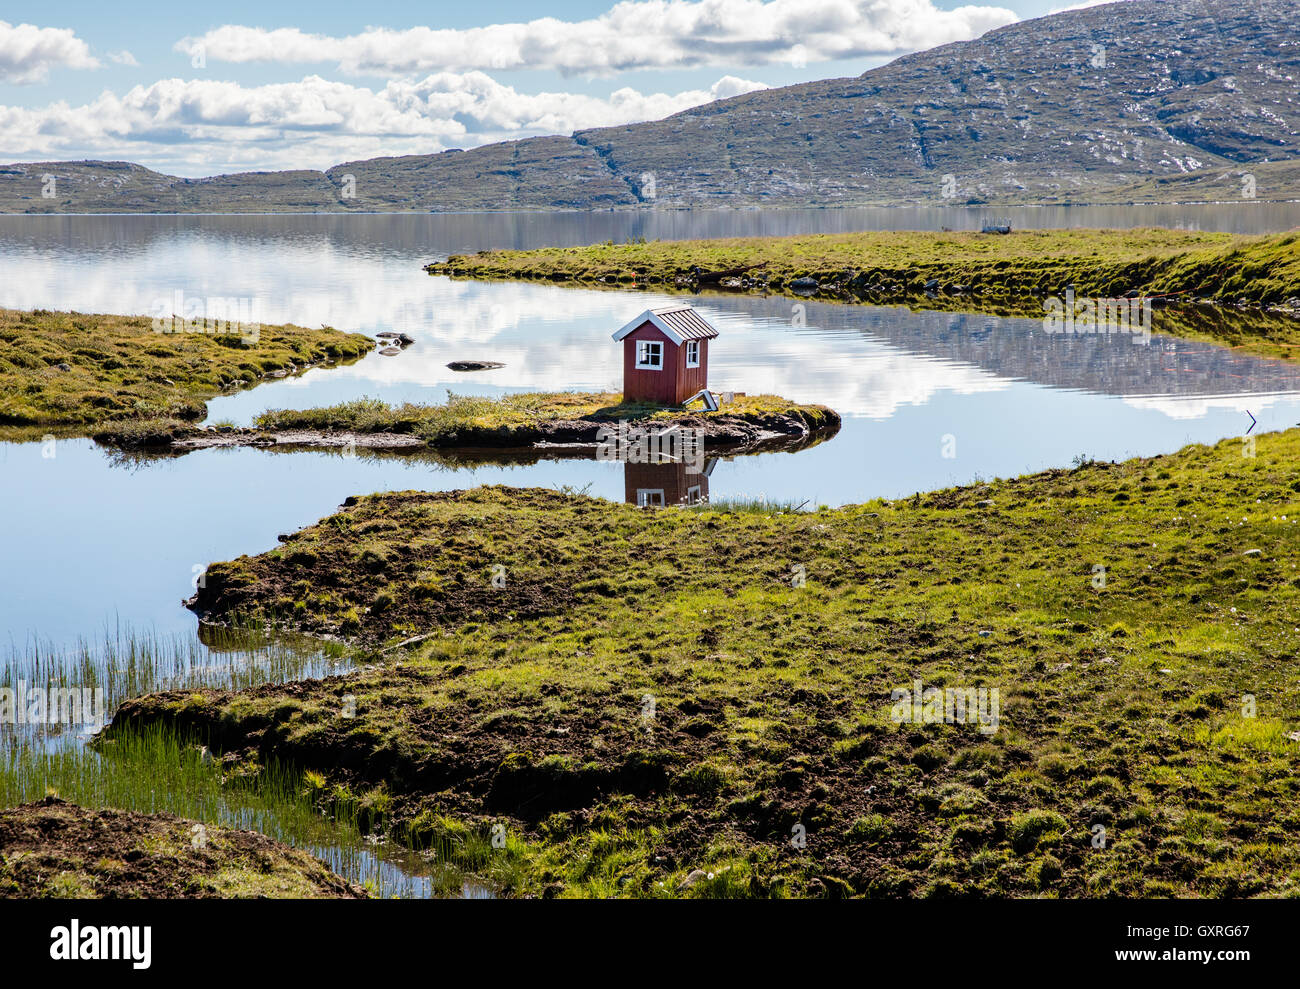 Petite cabane de pêche sur une petite île sur la rive du lac Vinstre dans le parc national de Jotunheimen dans la région de Norvège Oppland Banque D'Images